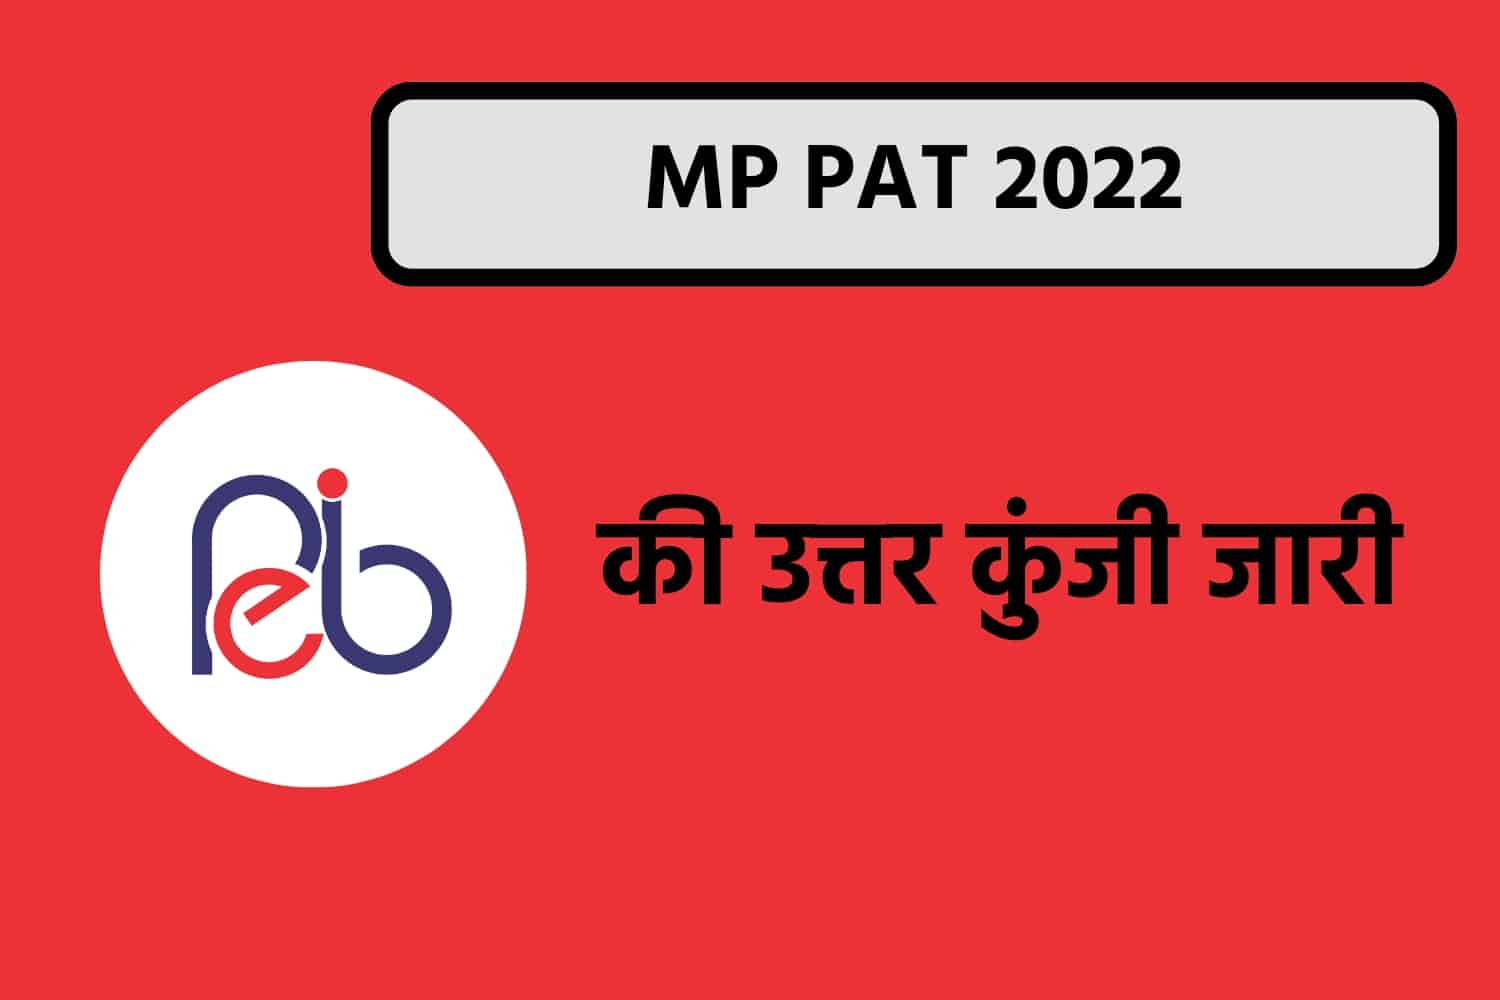 MP PAT 2022 Answer Key | मध्यप्रदेश PAT की उत्तर कुंजी जारी, देखें